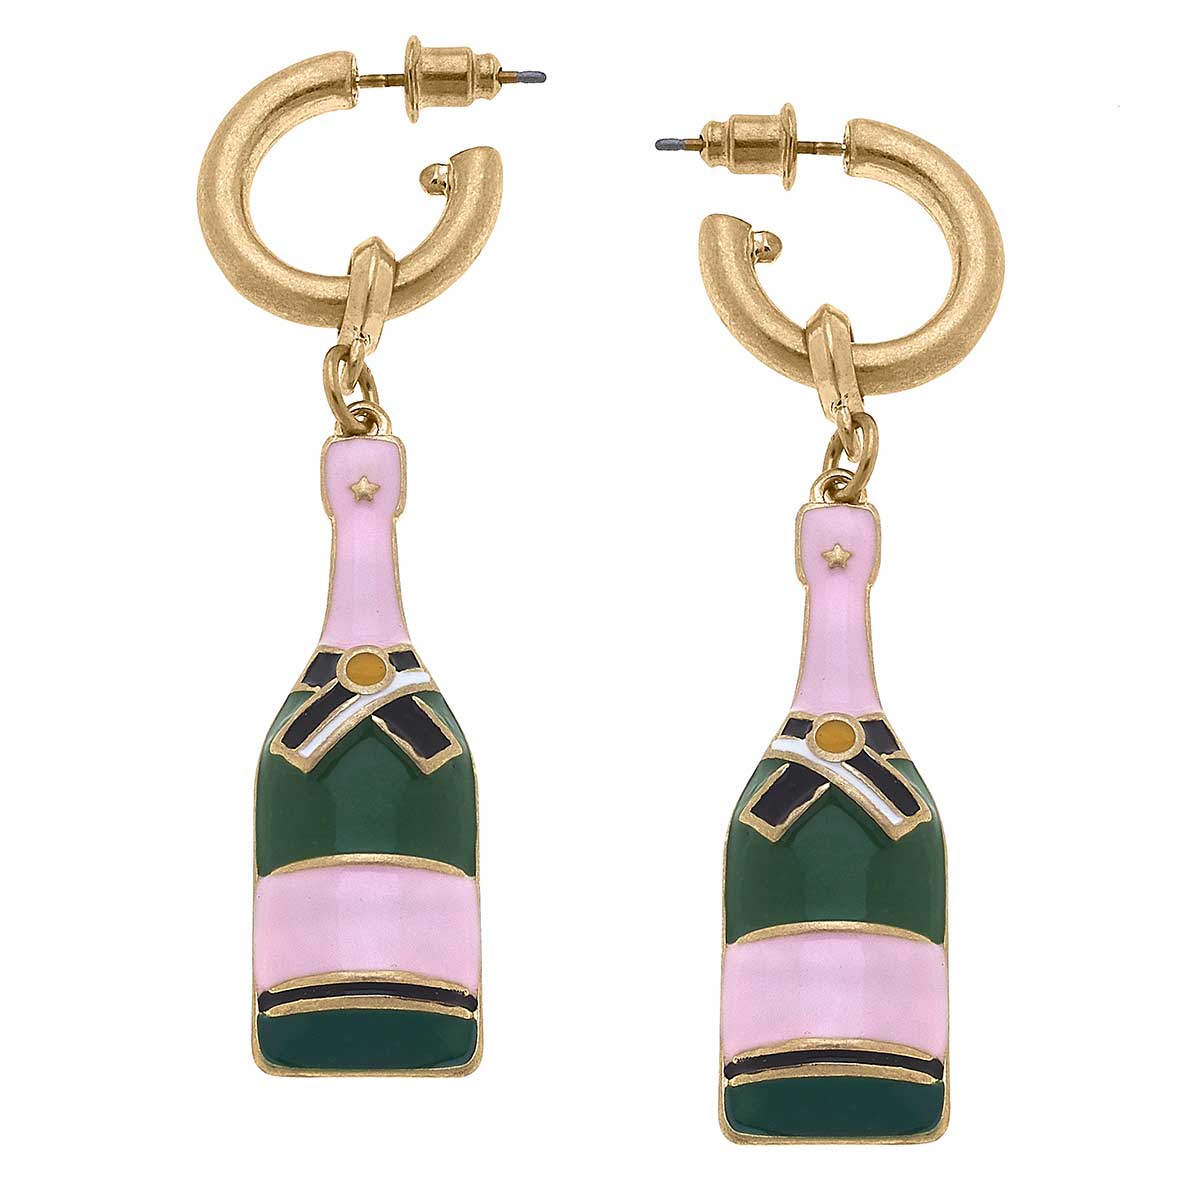 Lola Enamel Champagne Bottle Earrings in Pink & Green